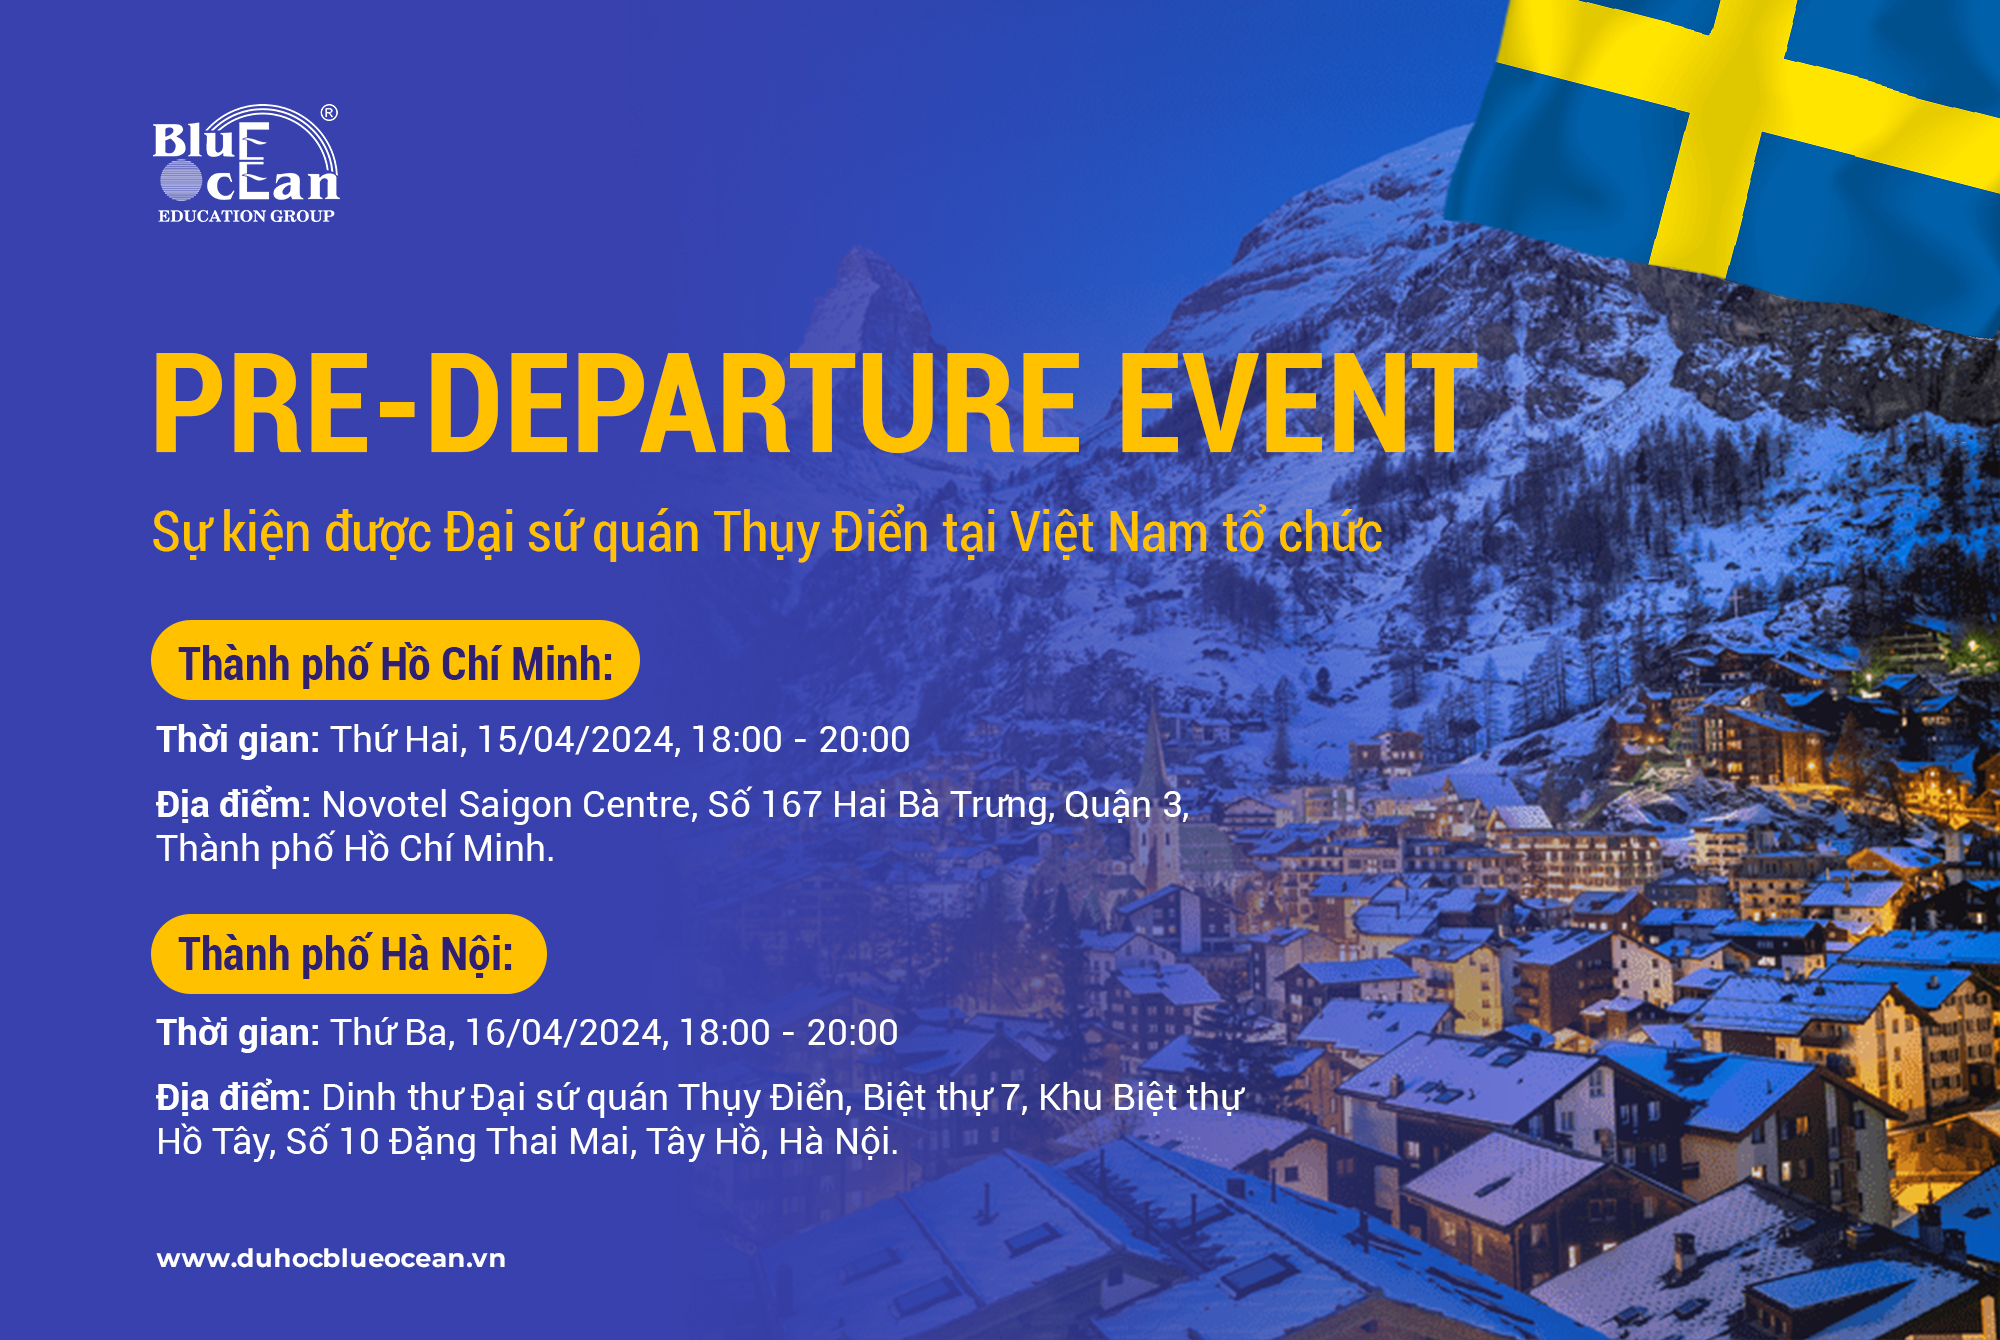 PRE-DEPARTURE EVENT - Sự kiện do Đại sứ quán Thuỵ Điển tổ chức dành riêng cho sinh viên đã nhận thư mời nhập học từ các trường tại Thuỵ Điển.